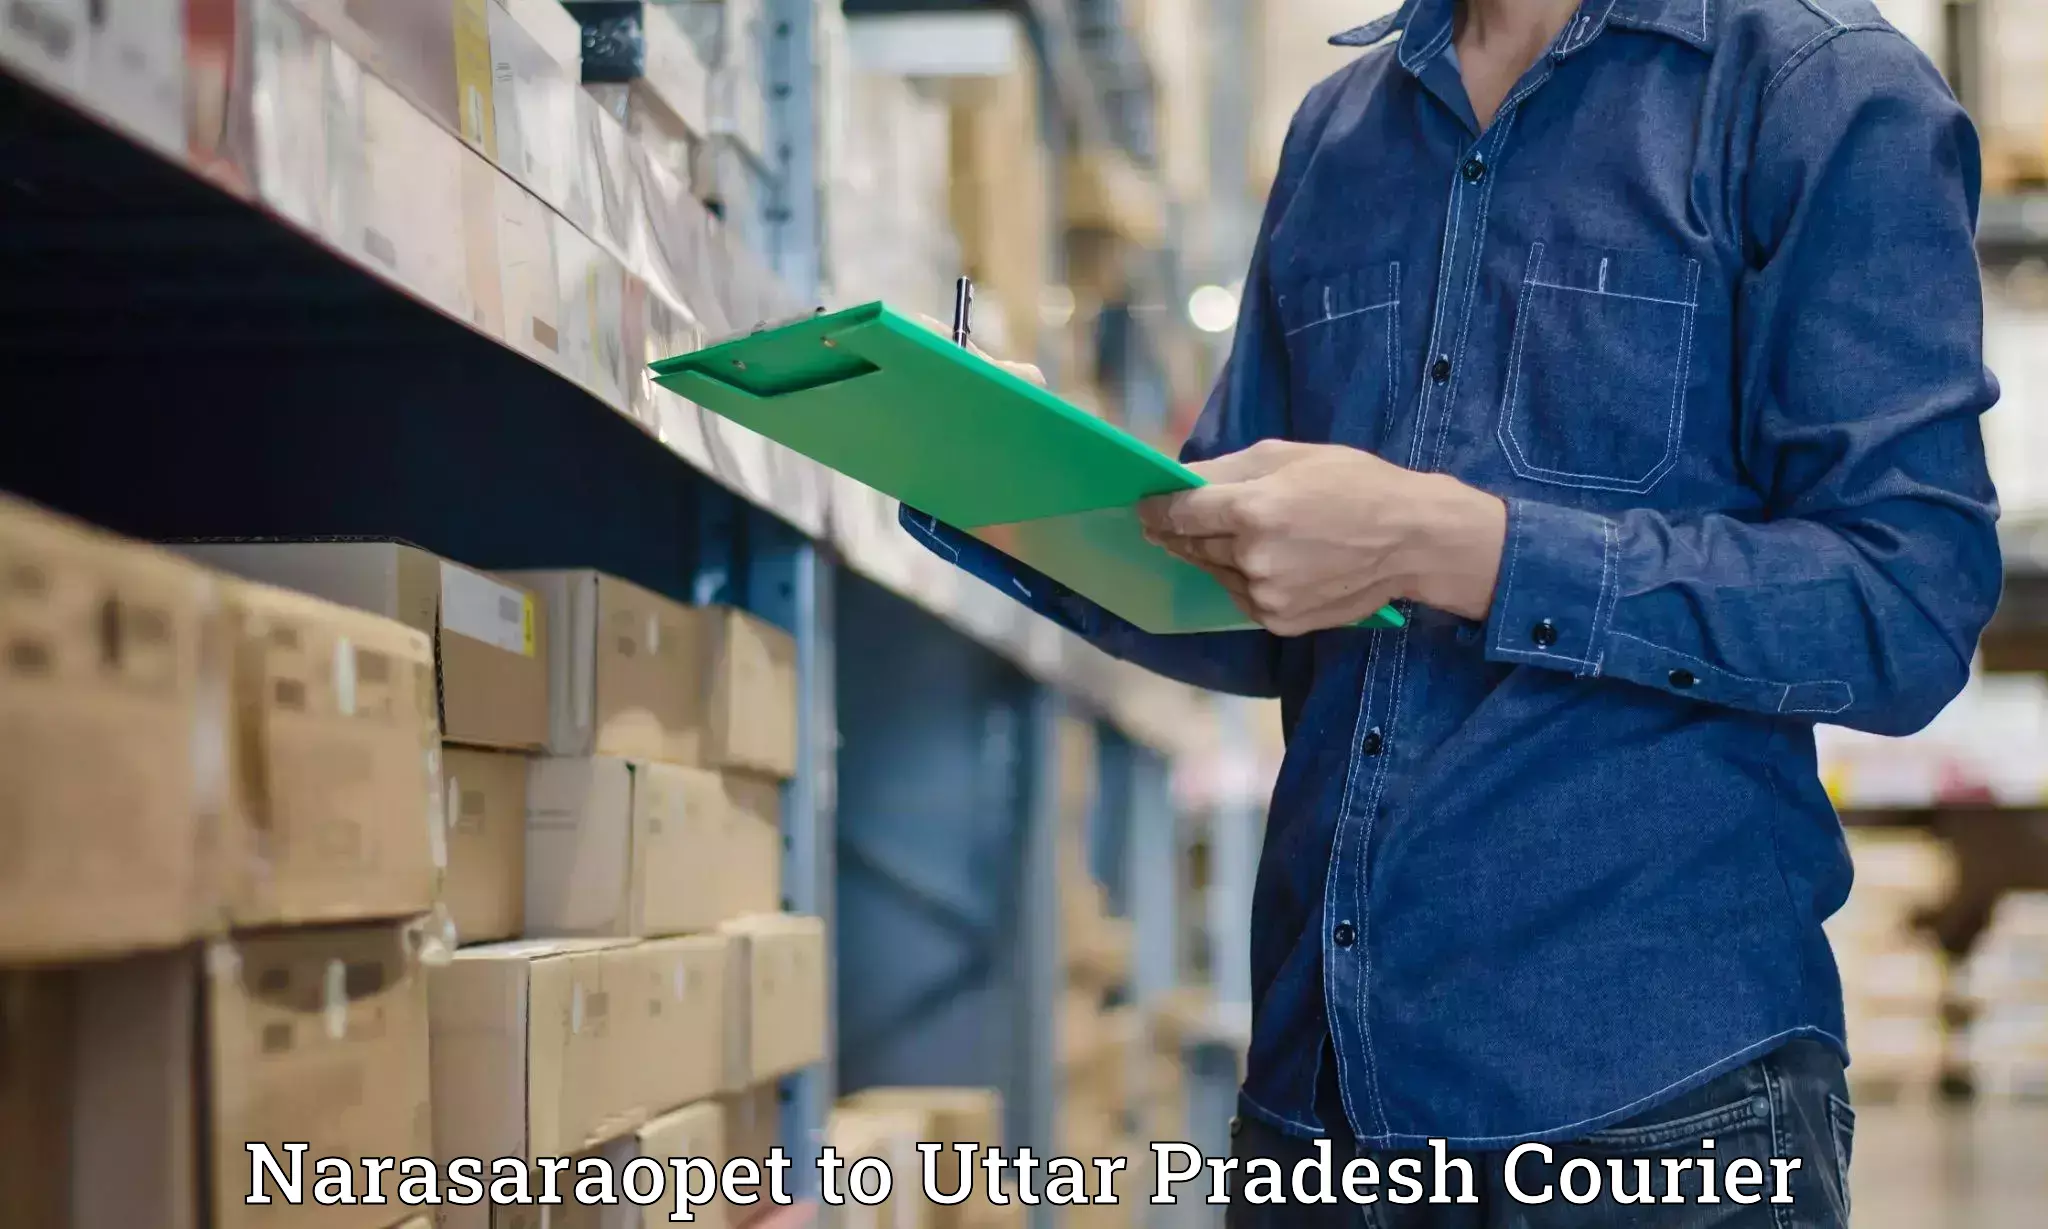 Door-to-door freight service Narasaraopet to Uttar Pradesh